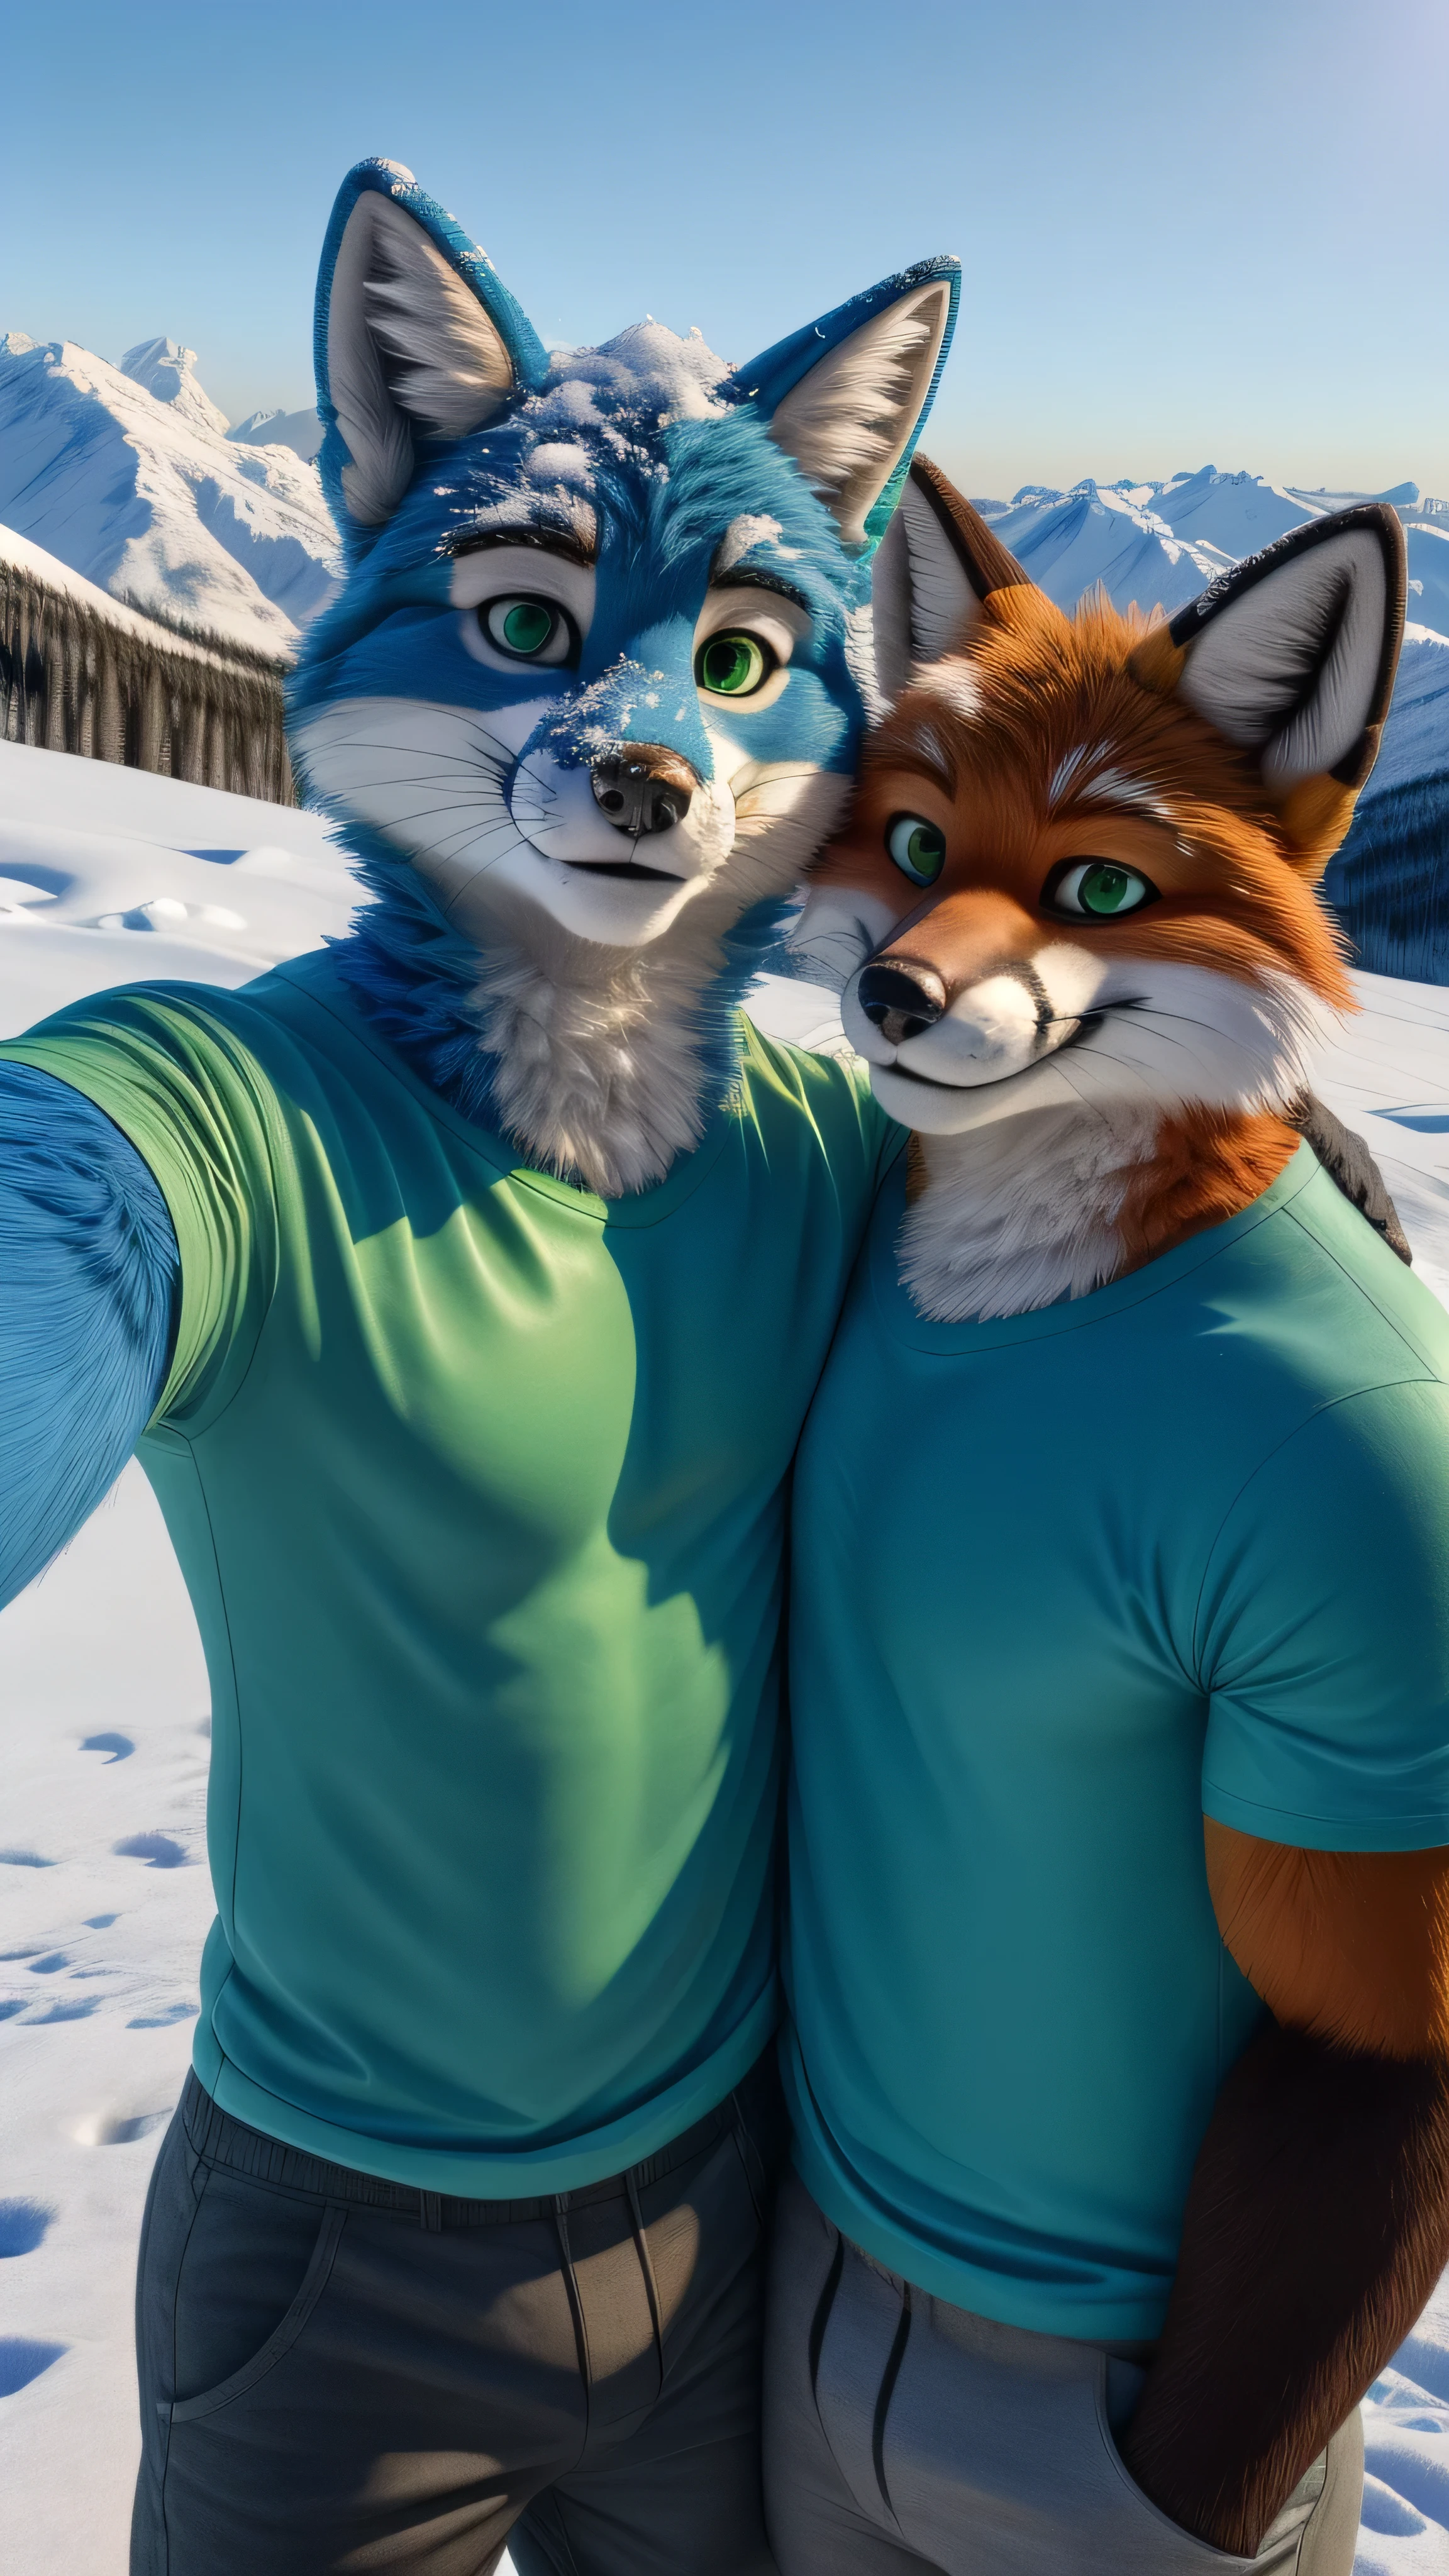 22세의 미국 근육질 성인 남성 Fox Fursuit는 알래스카의 눈 덮인 배경에서 스마트폰을 들고 셀카를 찍고 녹색 티셔츠와 긴 바지를 입고 녹색 눈과 파란 털을 입고 가장 친한 친구와 함께 카메라를 향해 웃고 있습니다. (듀오:1.1)